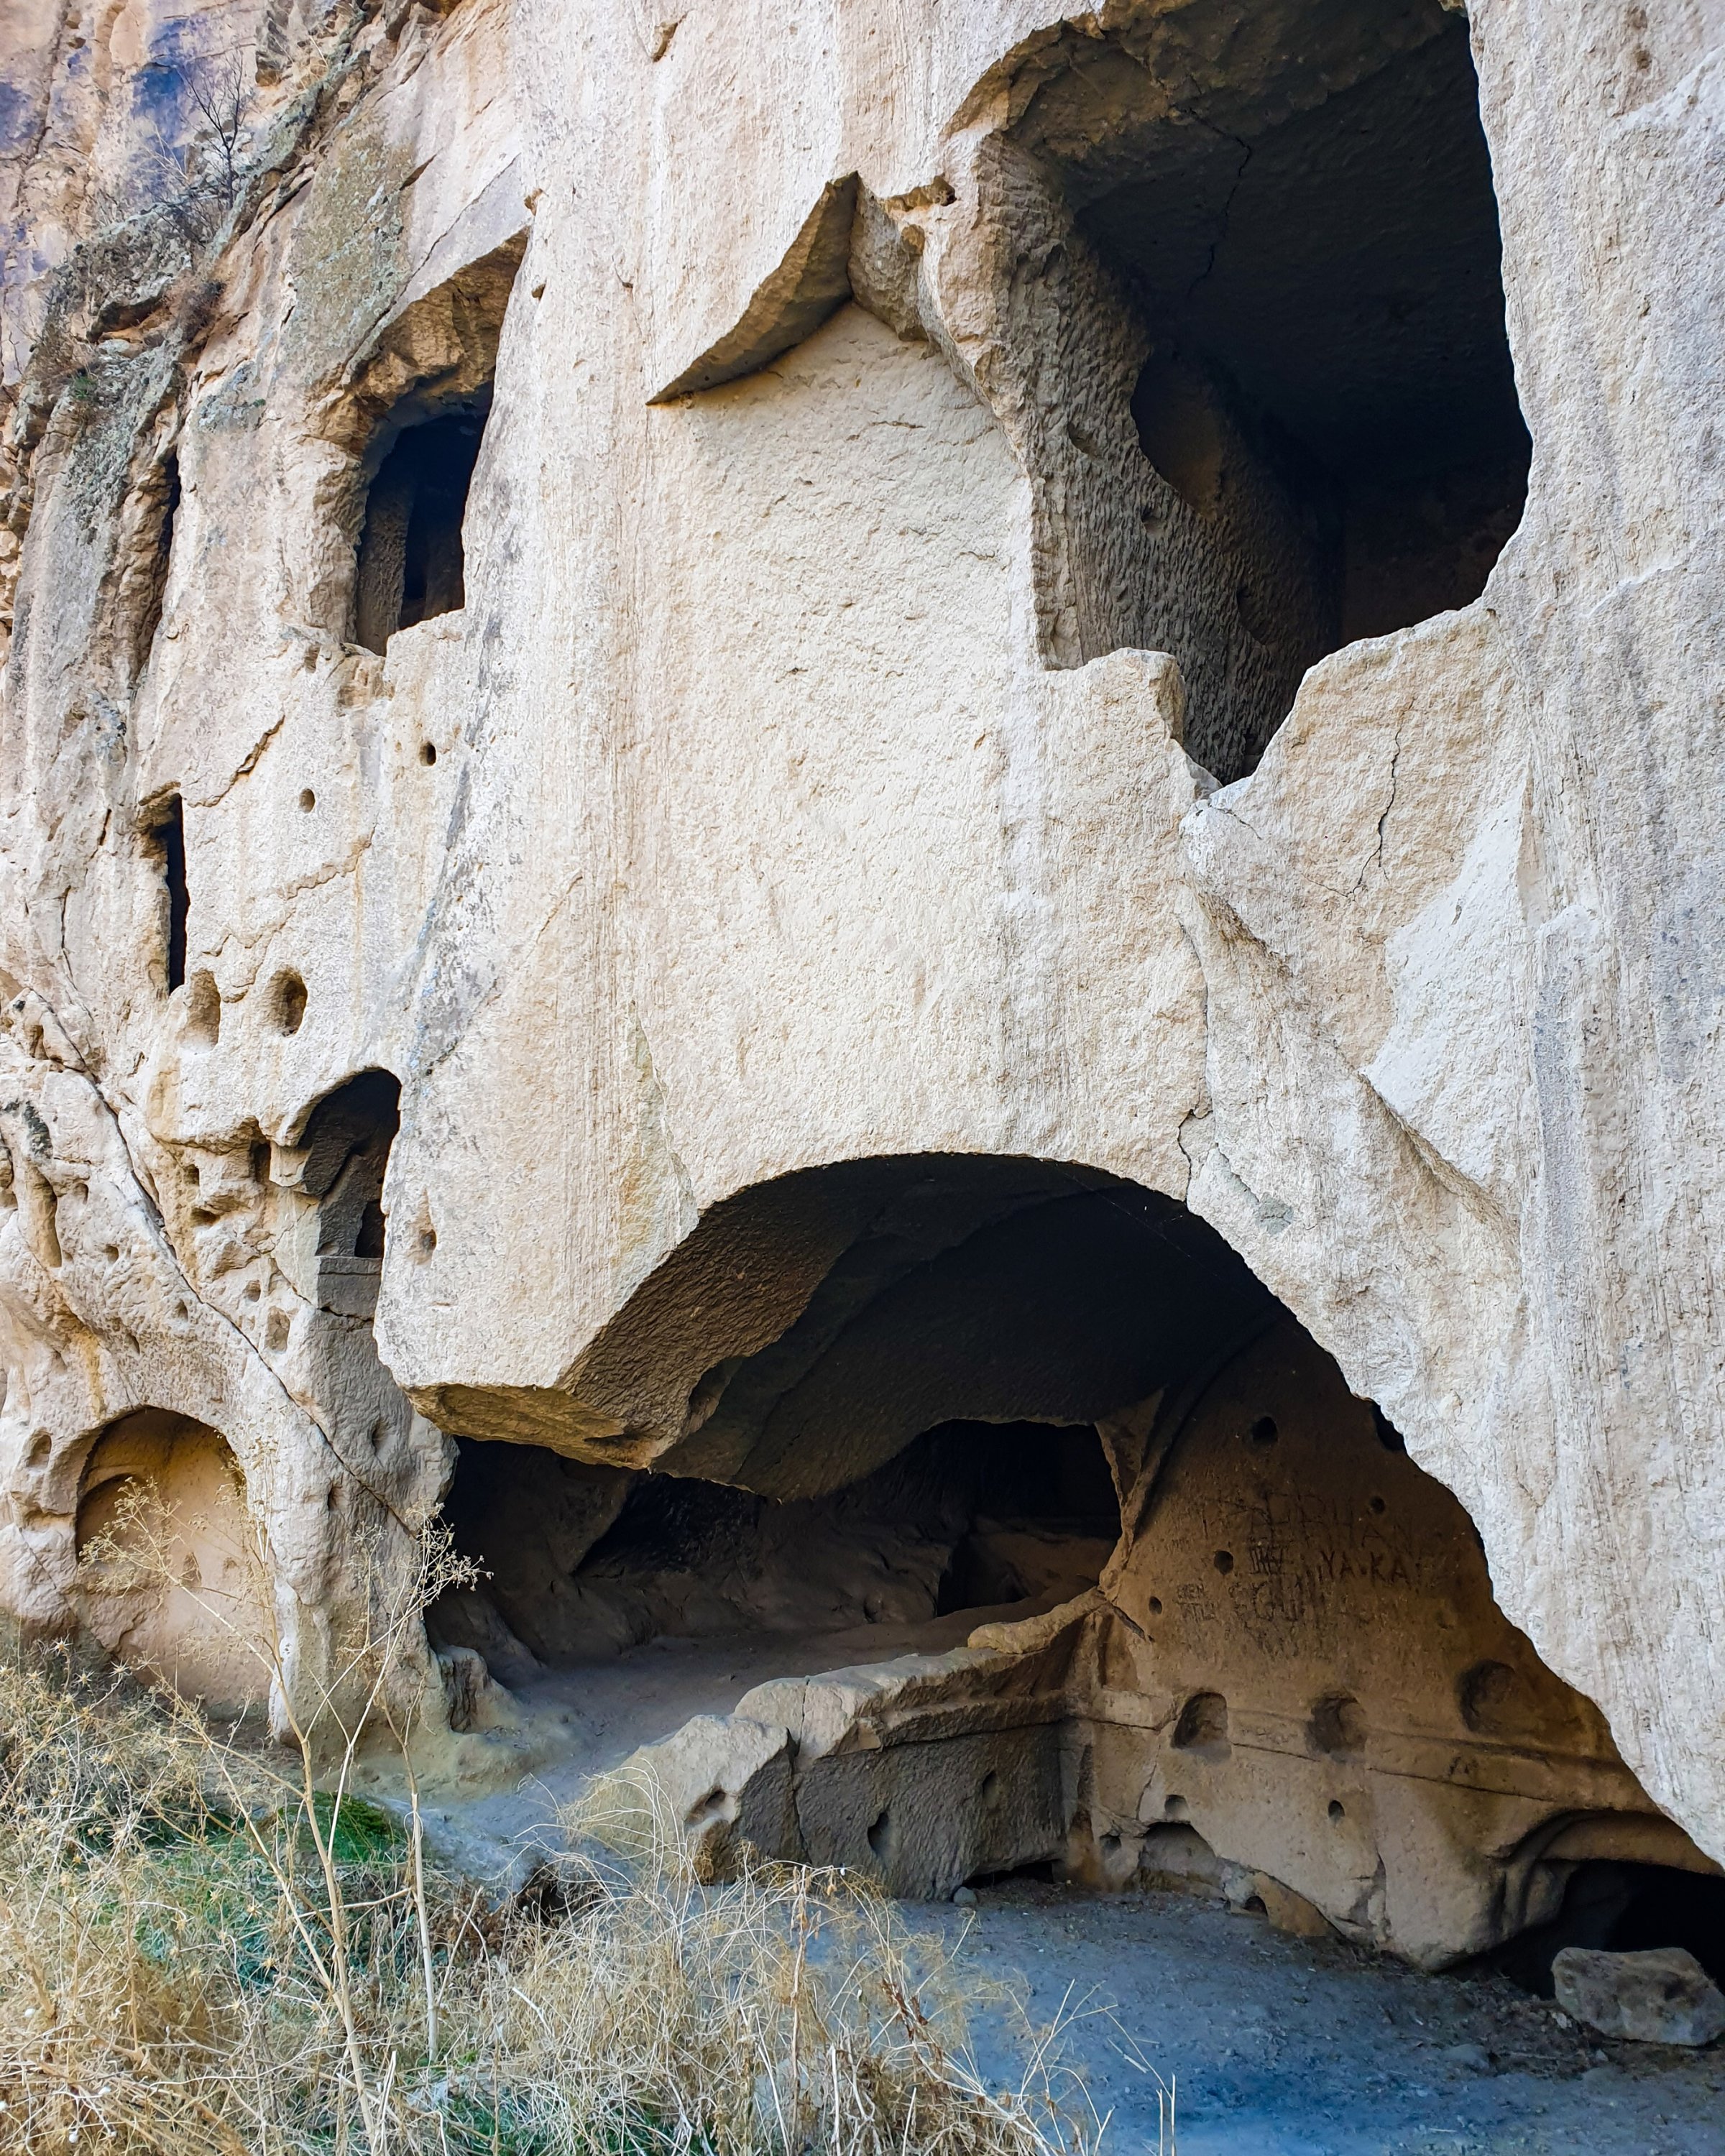 Unnamed rock dwellings in Ihlara Valley. (Photo by Argun Konuk)